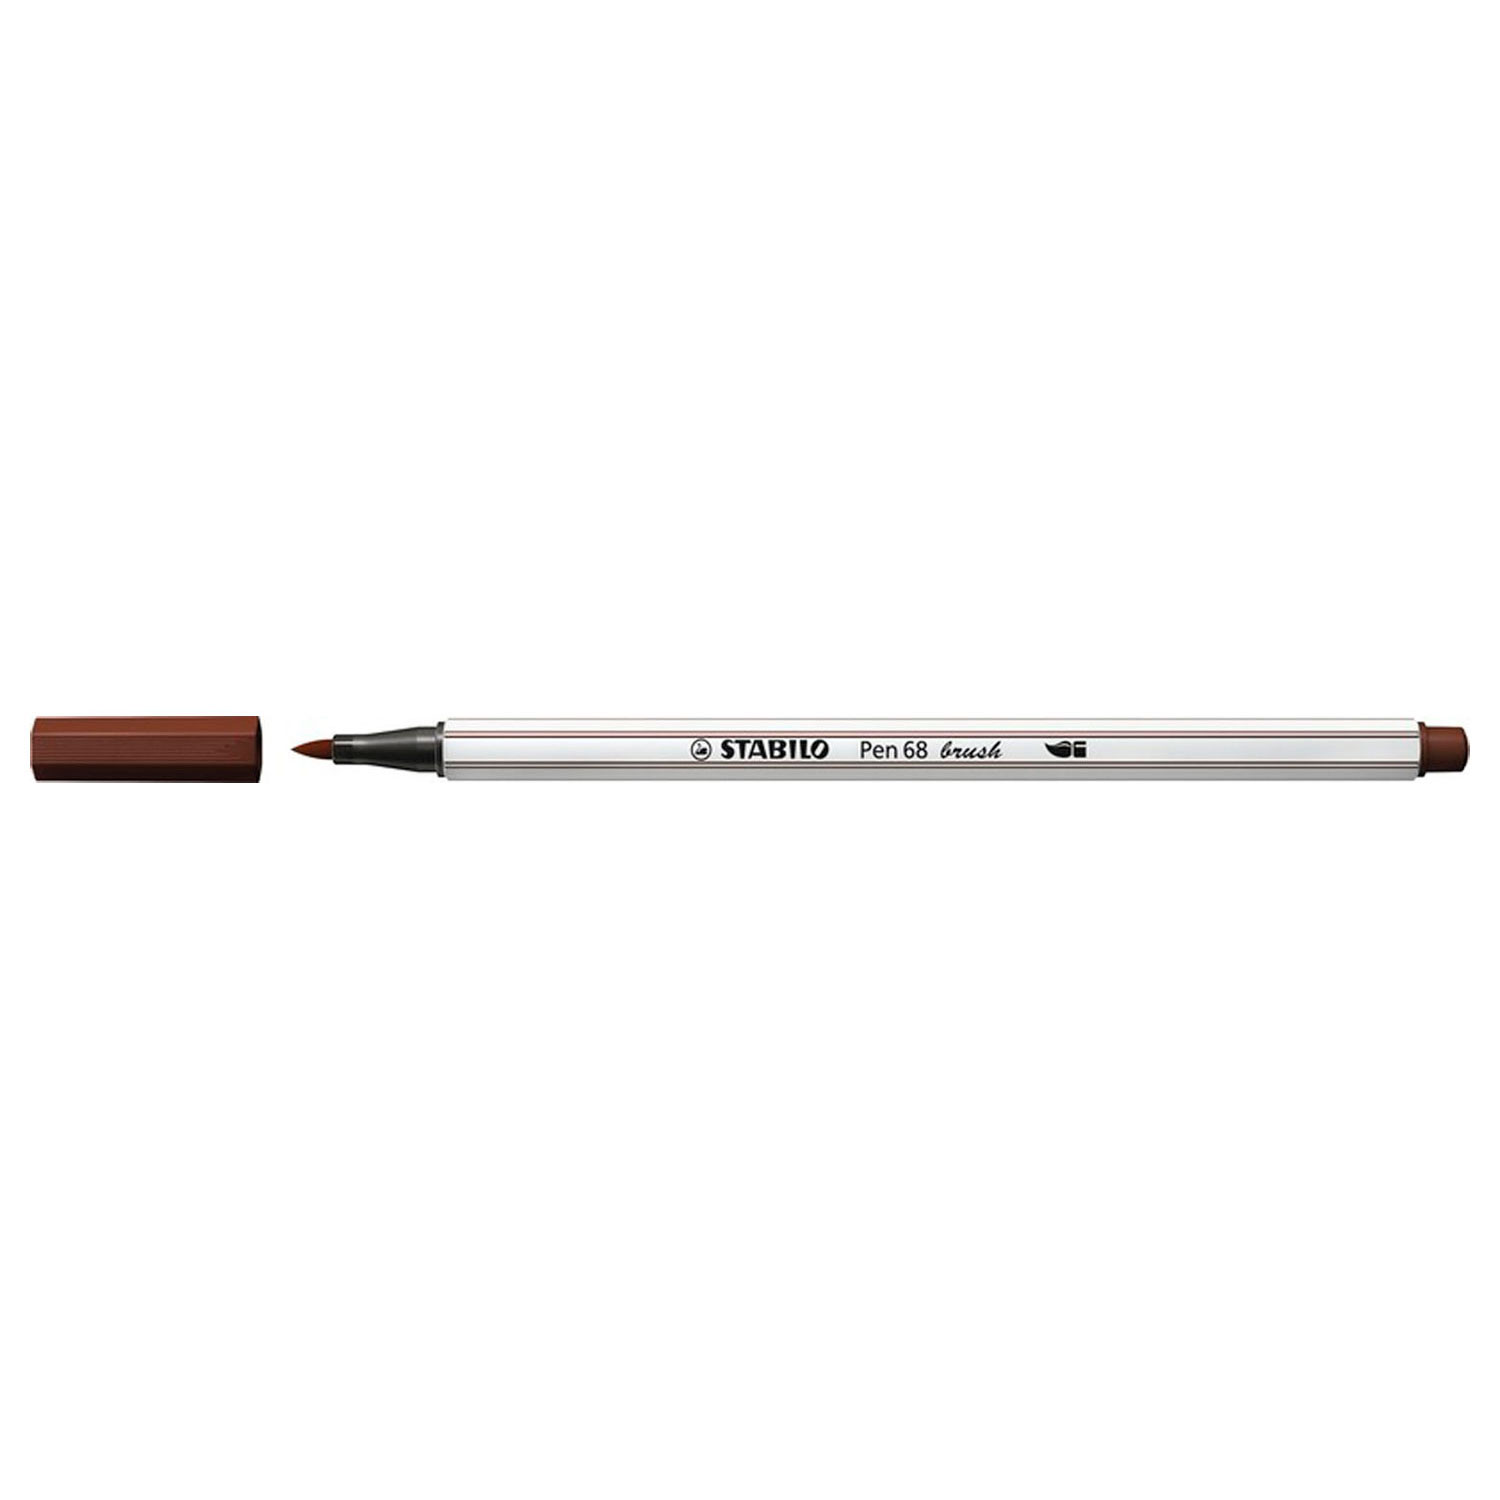 STABILO Pen 68 Brush 45 - Bruin